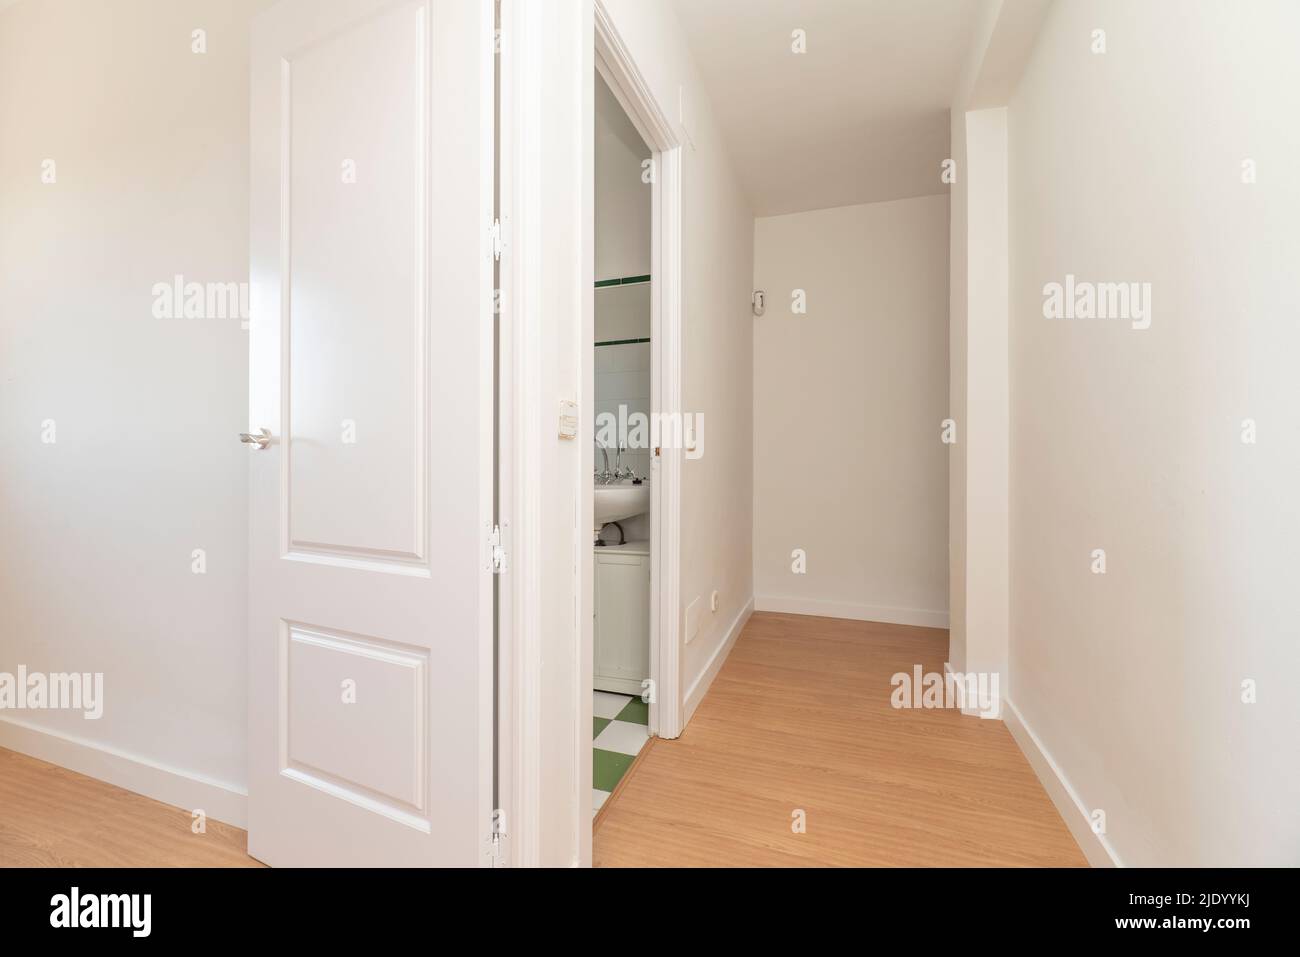 Flur eines Hauses mit hellem Eichenboden mit Zugangstüren zu verschiedenen Zimmern und weißer Holzschreinerei Stockfoto